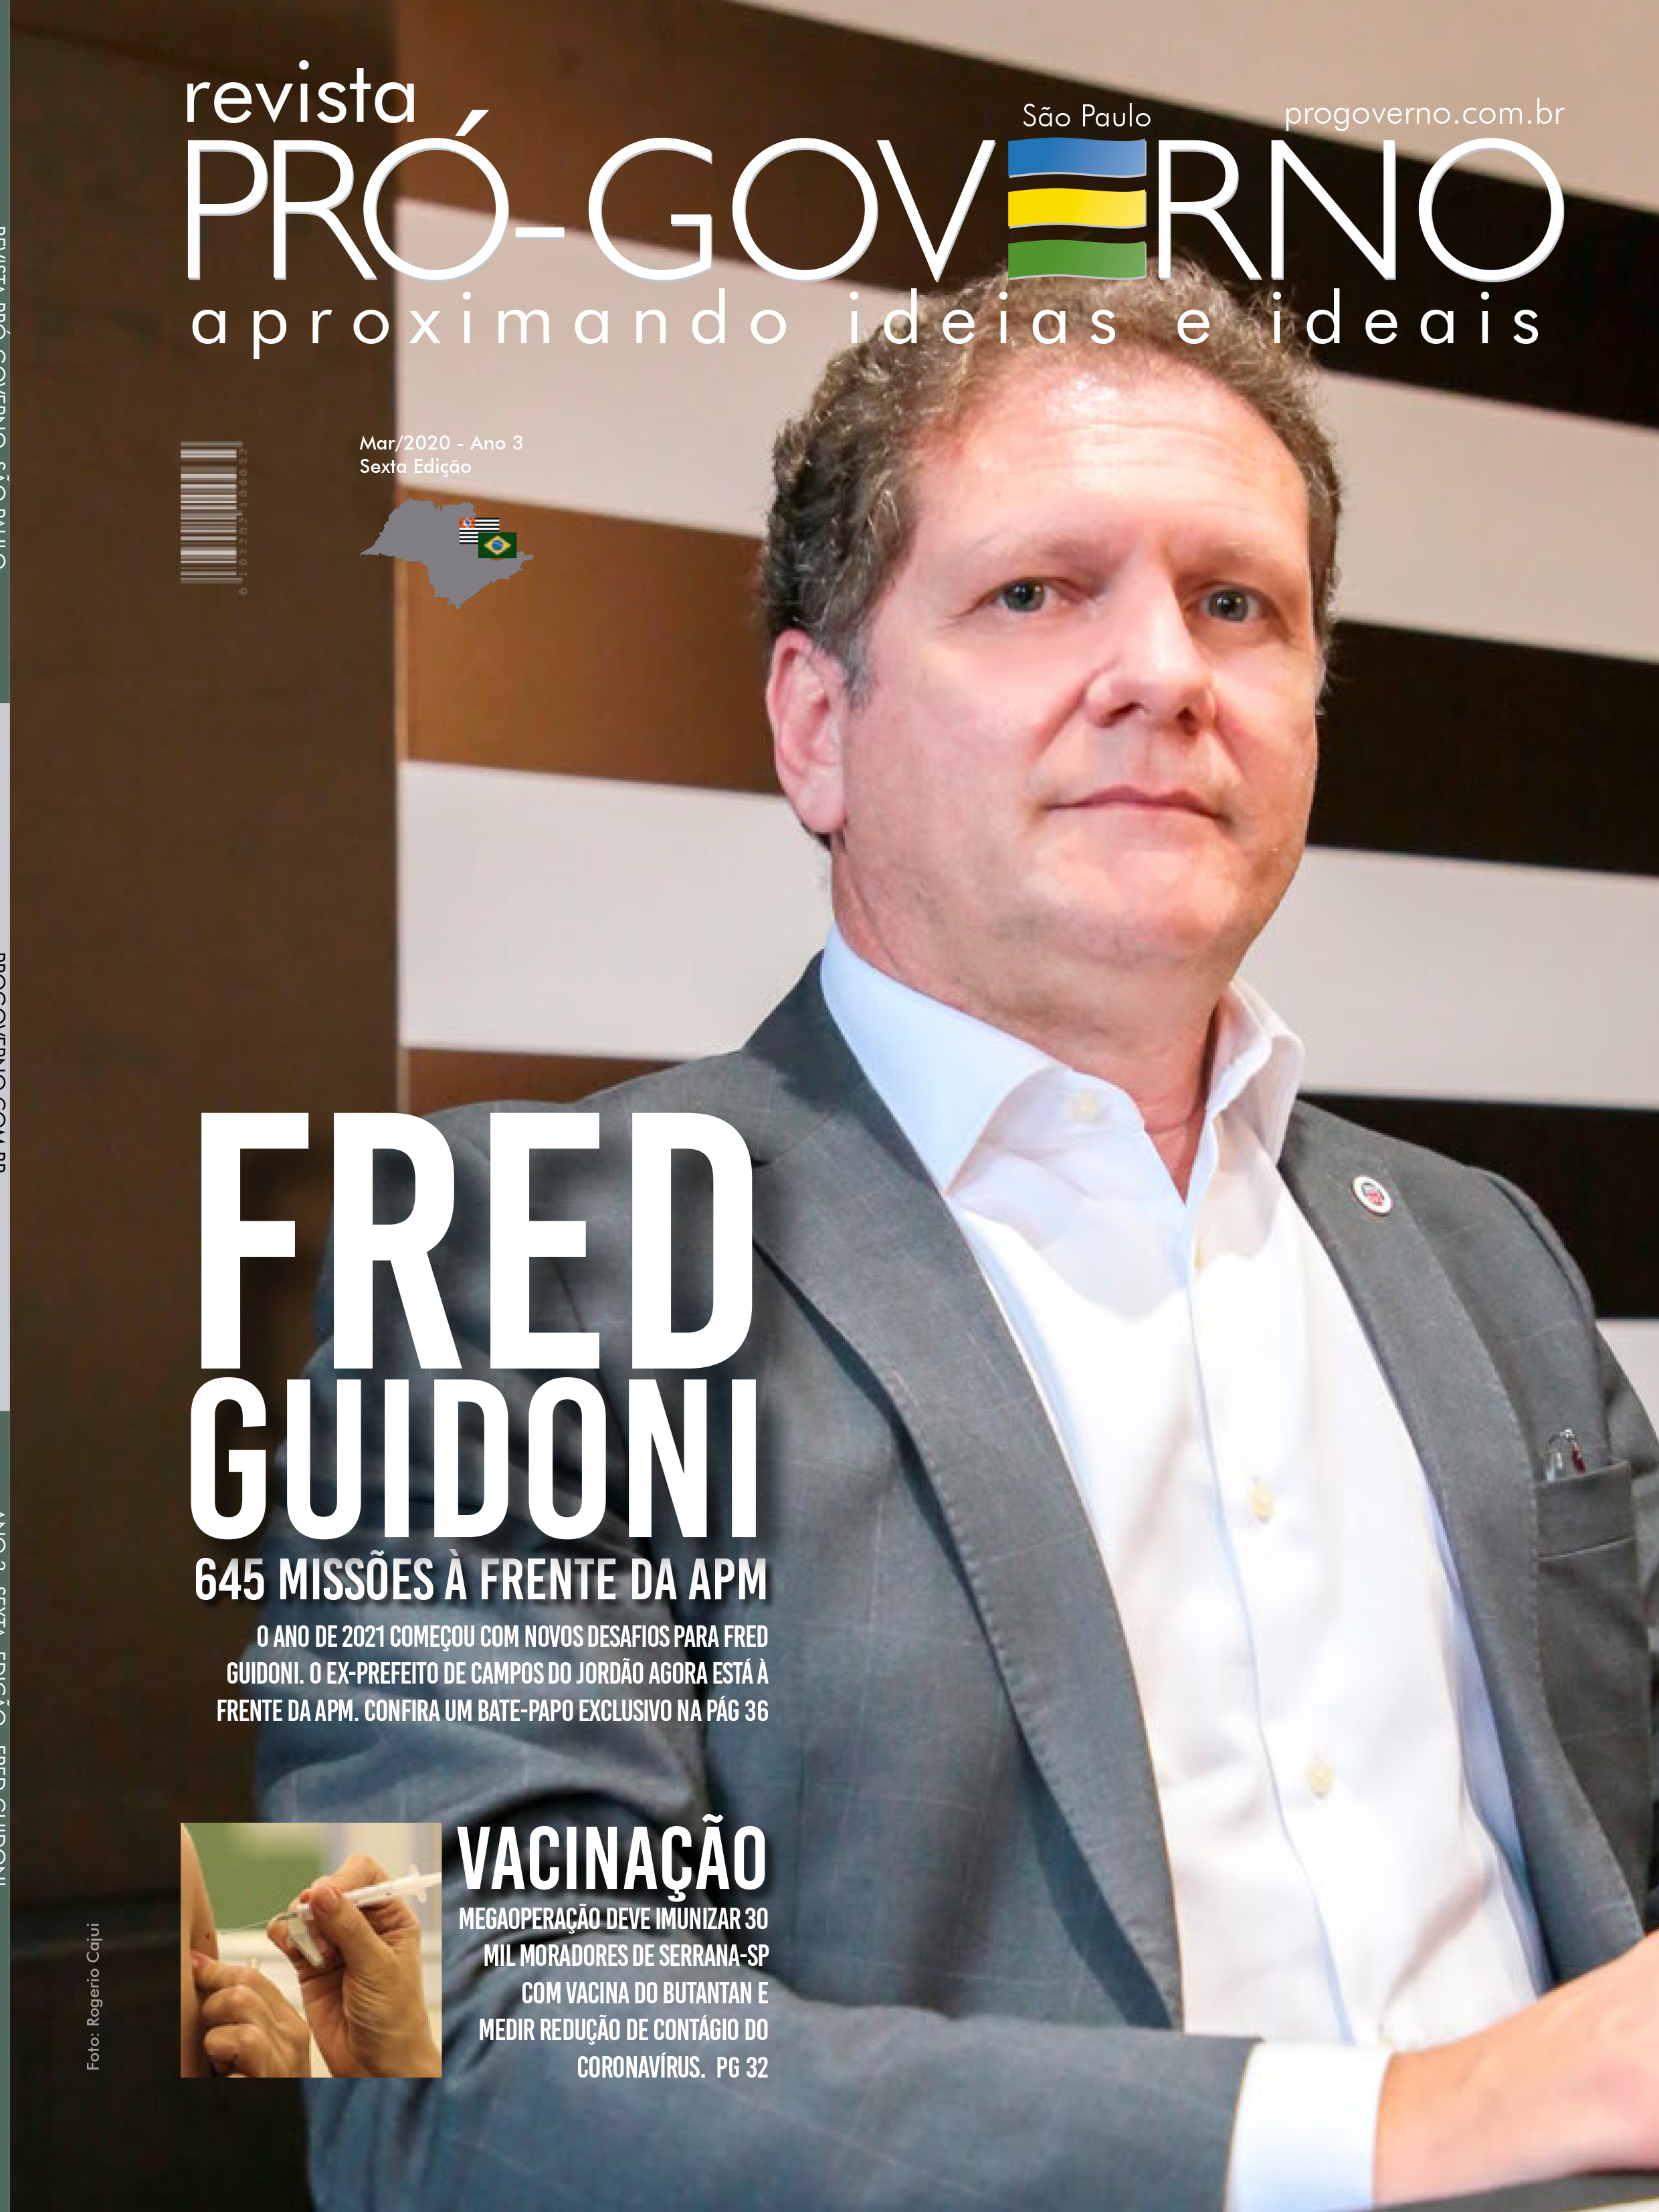 Fred Guidoni